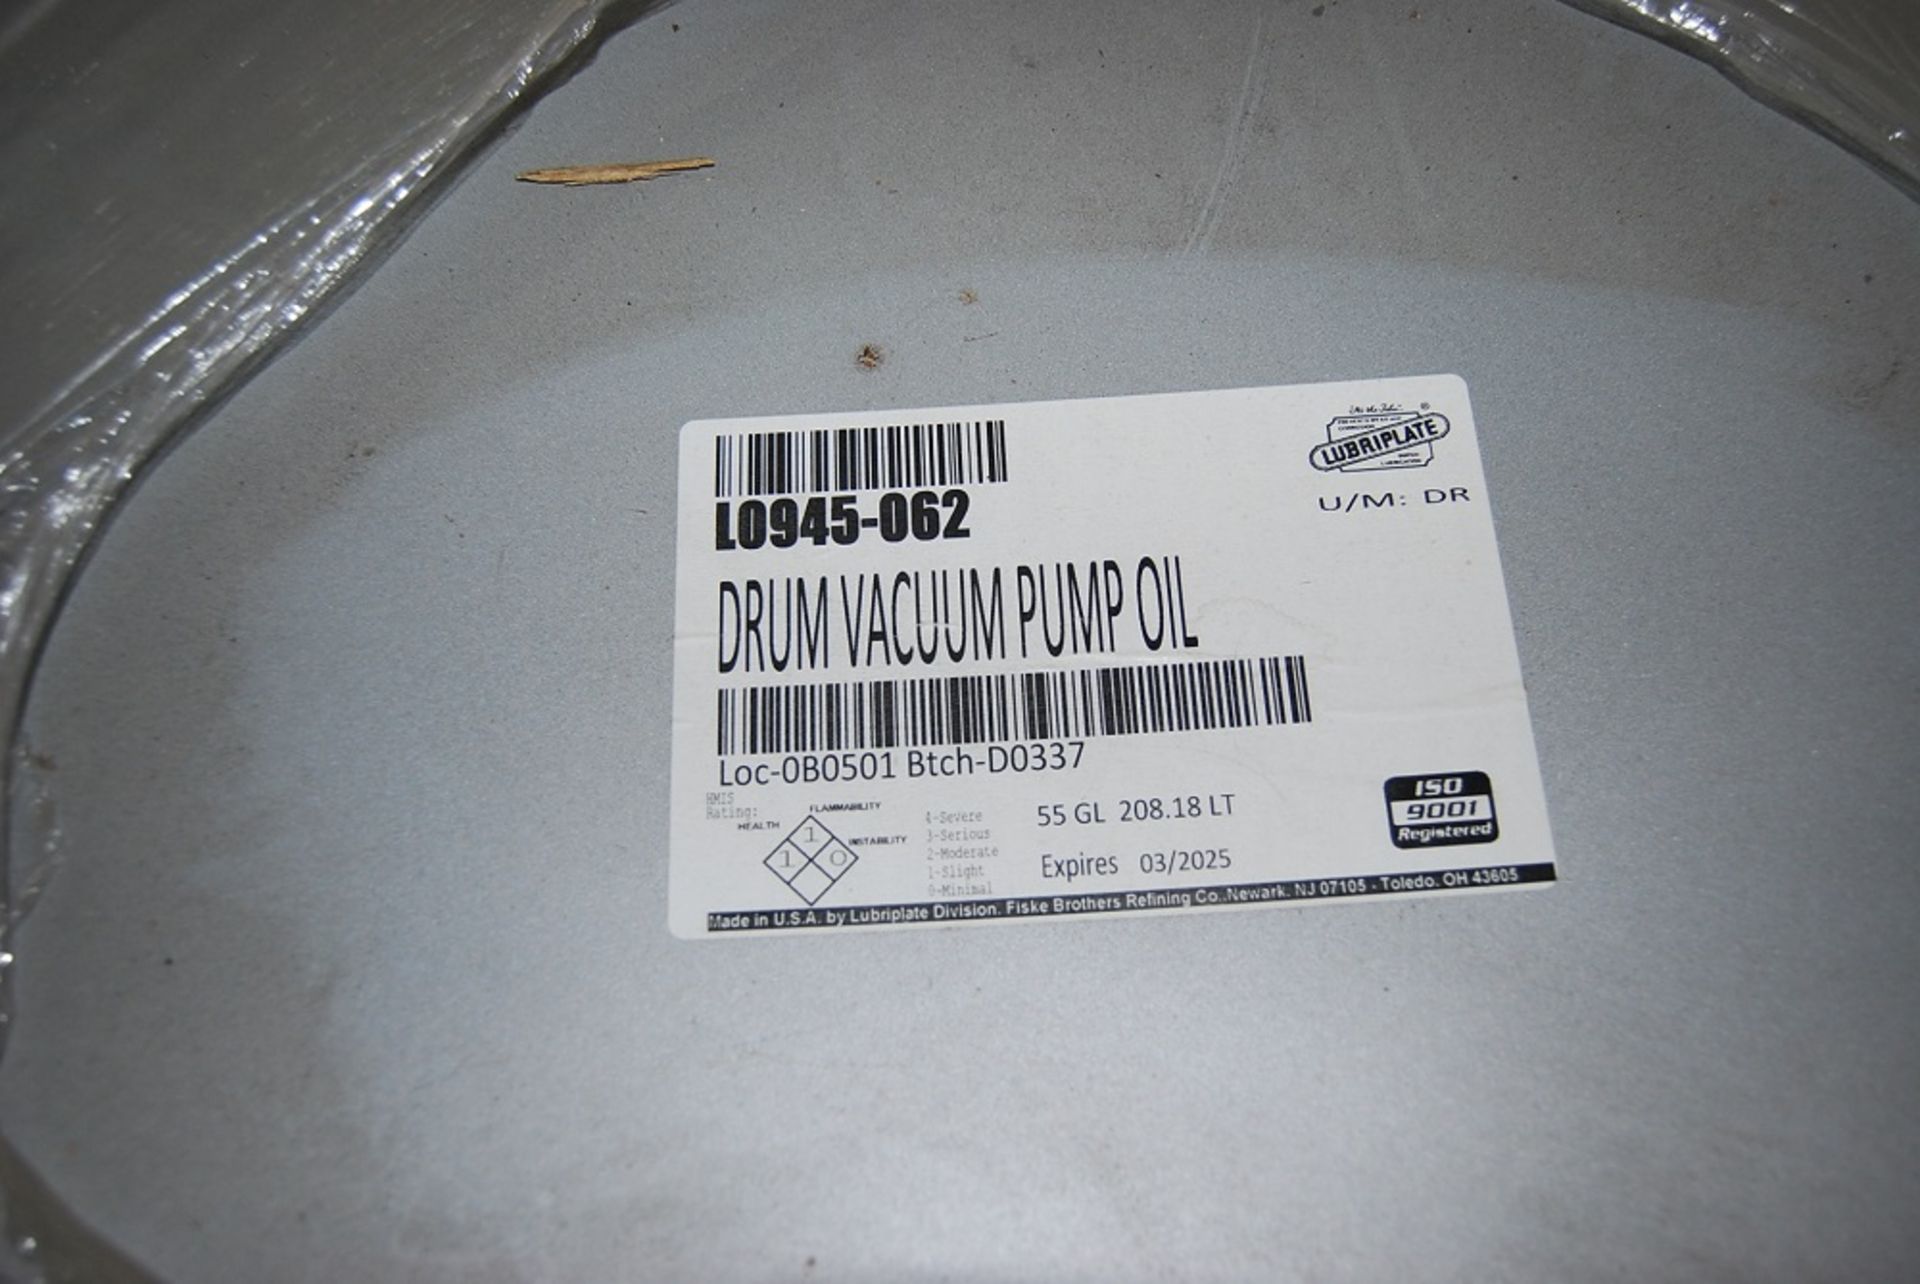 Drum Vacuum Pump Oil, New Drum never opened, 55GL 208.18LT Expires 02-2025 - Image 5 of 6